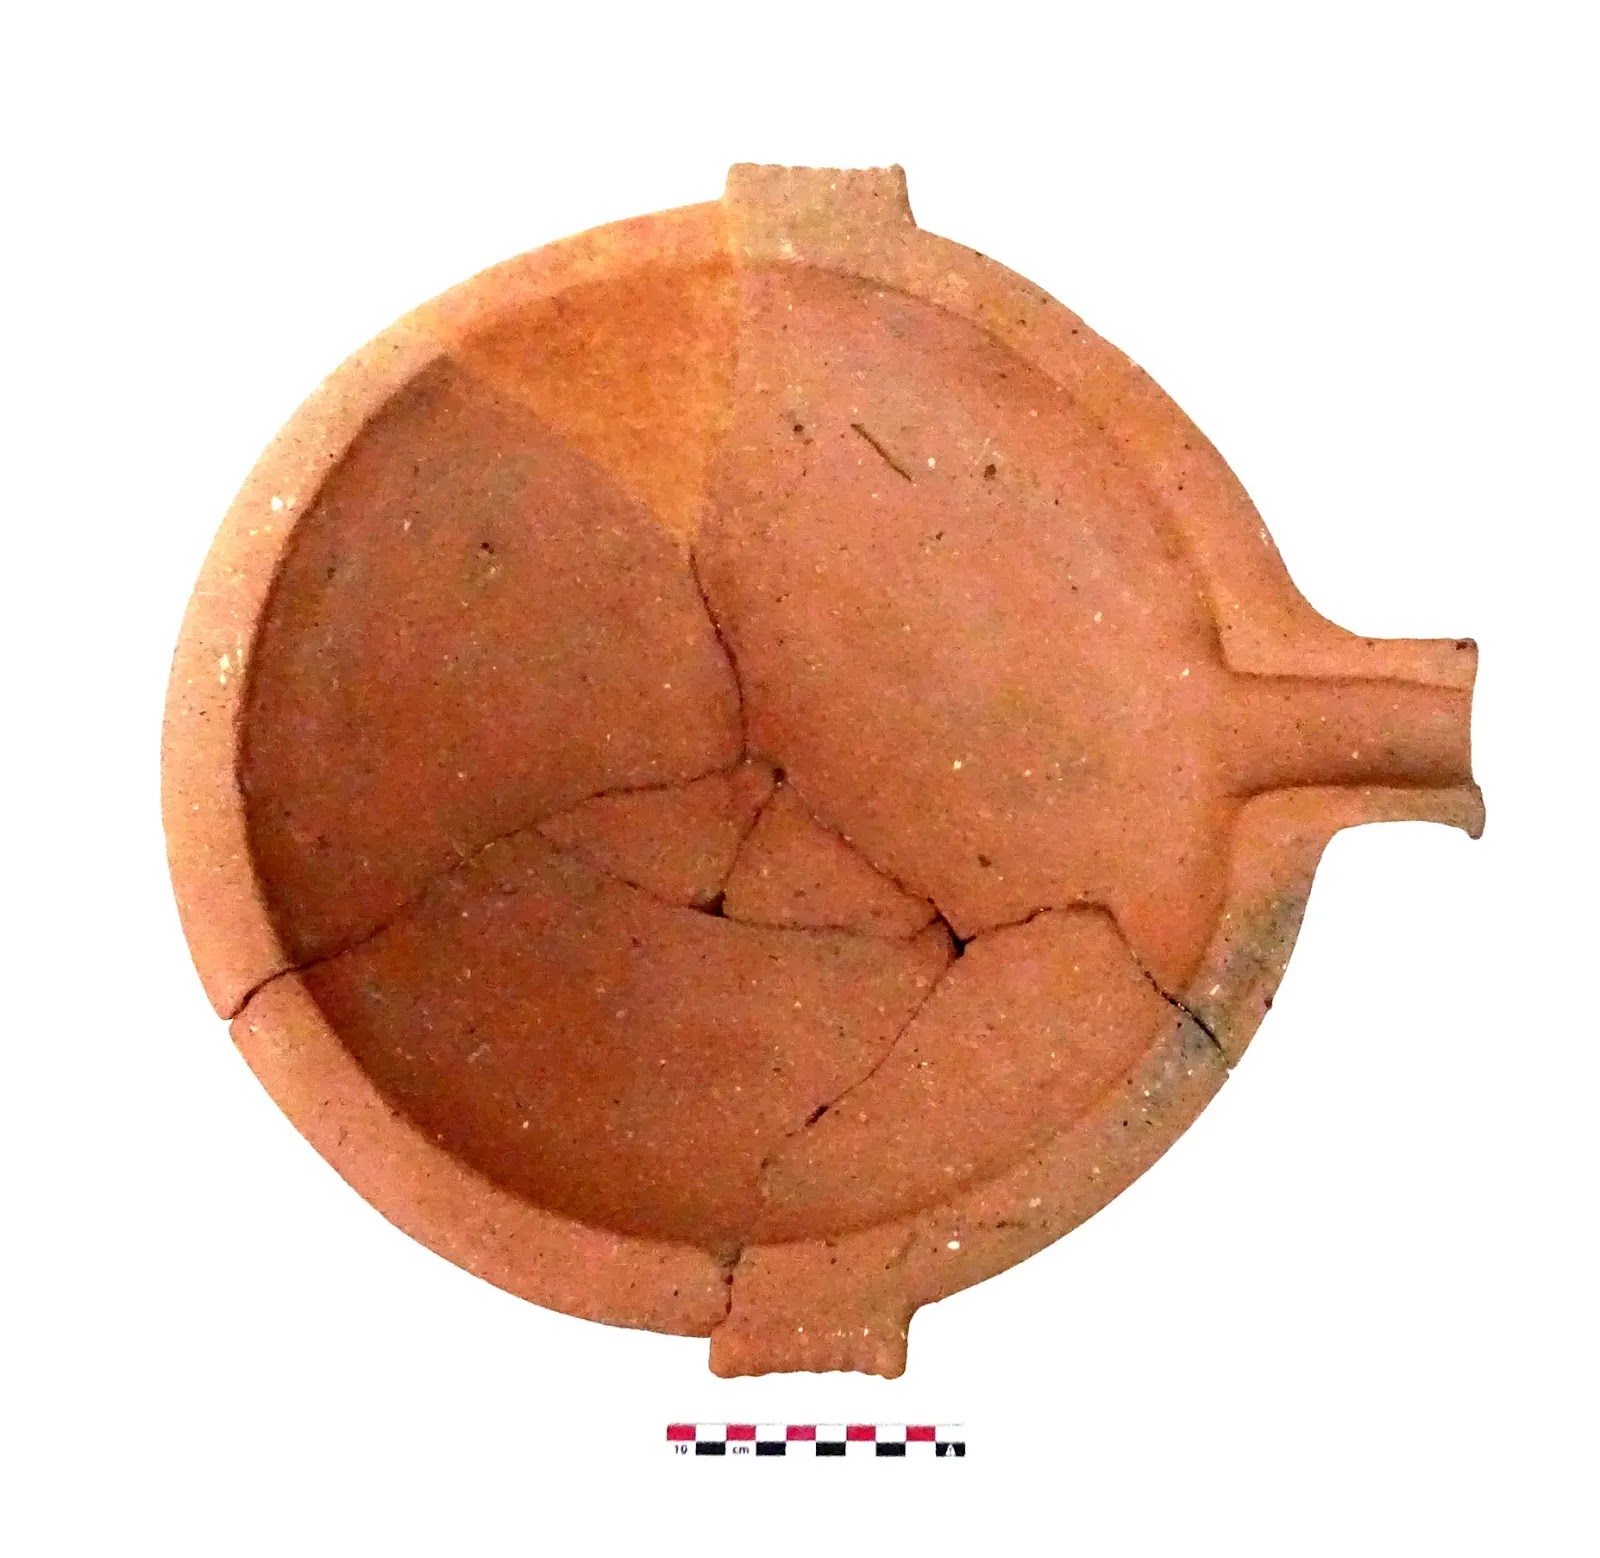 Πήλινο αγγείο από την αρχαία οικοσυσκευή μιας Σκιαθίτικης Κλασικής-Ελληνιστικής αγροικίας